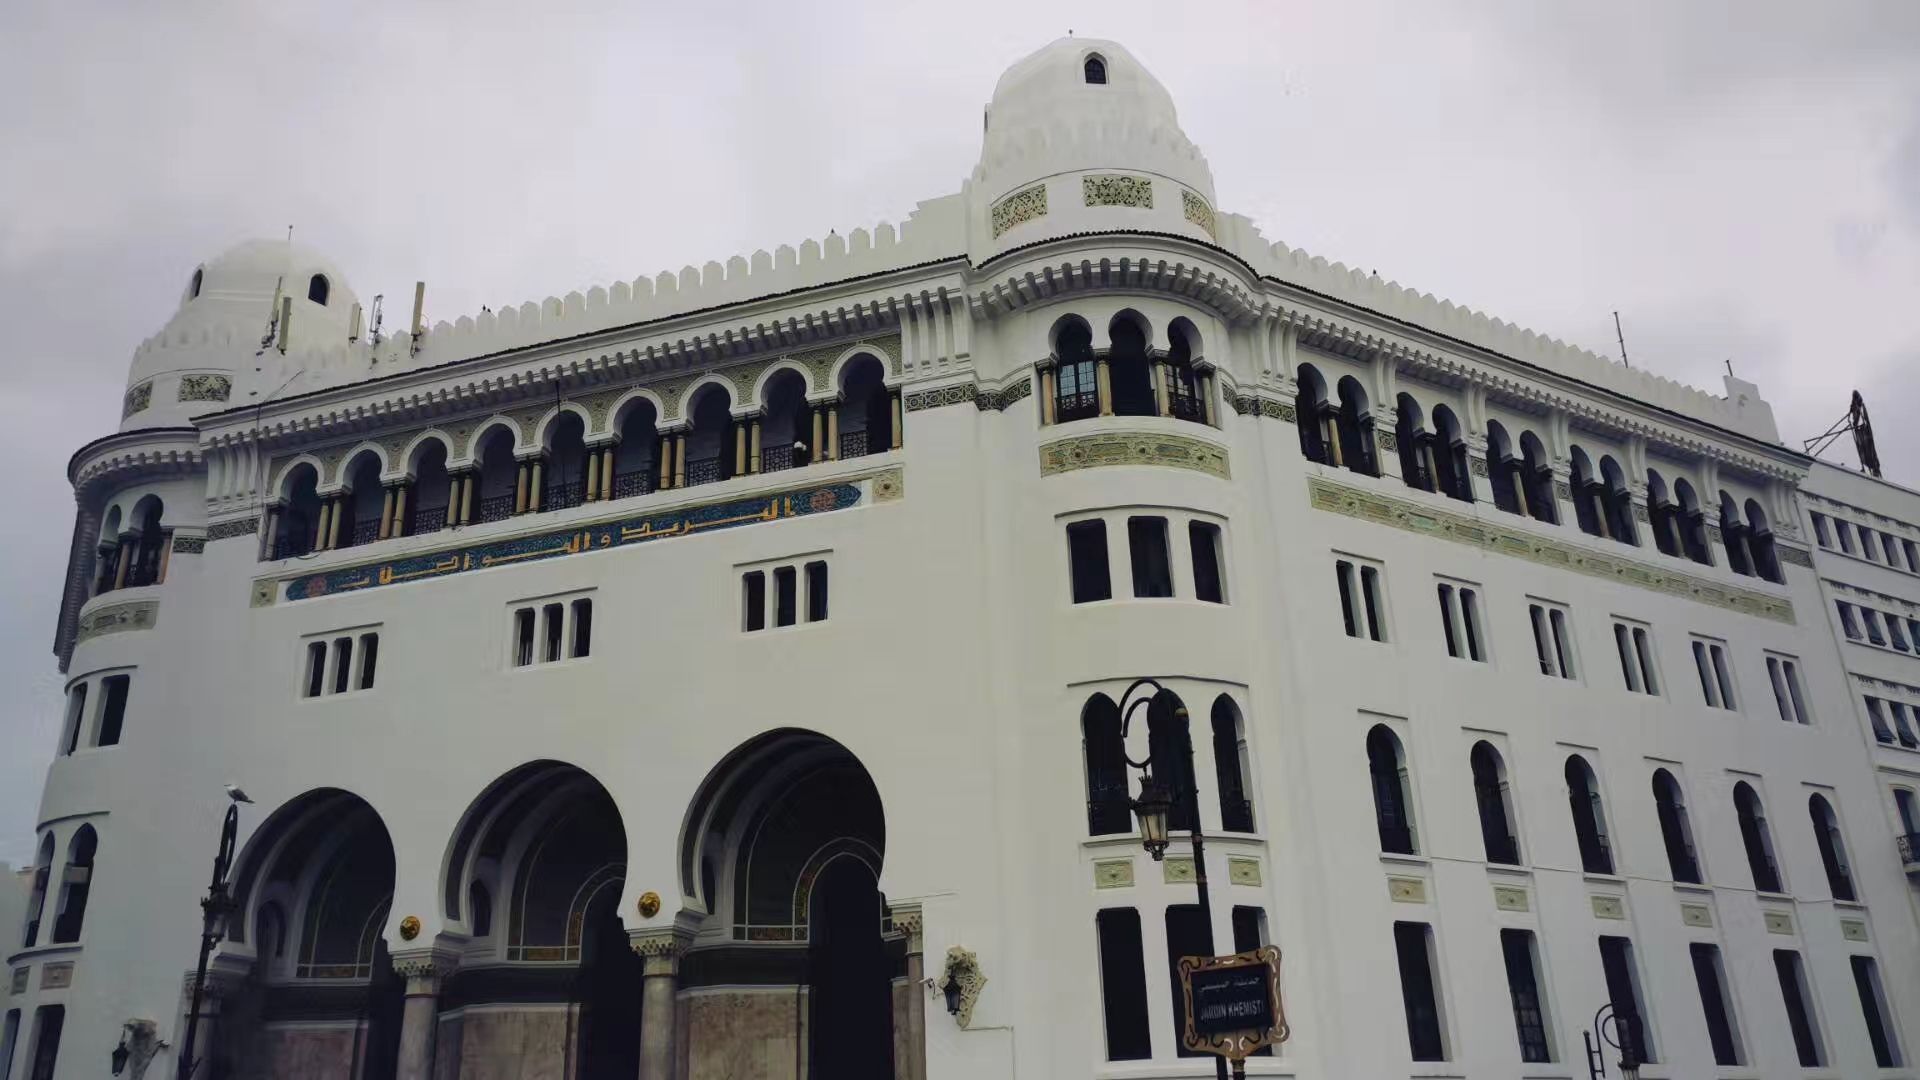 “大邮局”是“Grande Poste d'Alger”的直译，位于阿尔及尔市区中心，可以说大邮局是